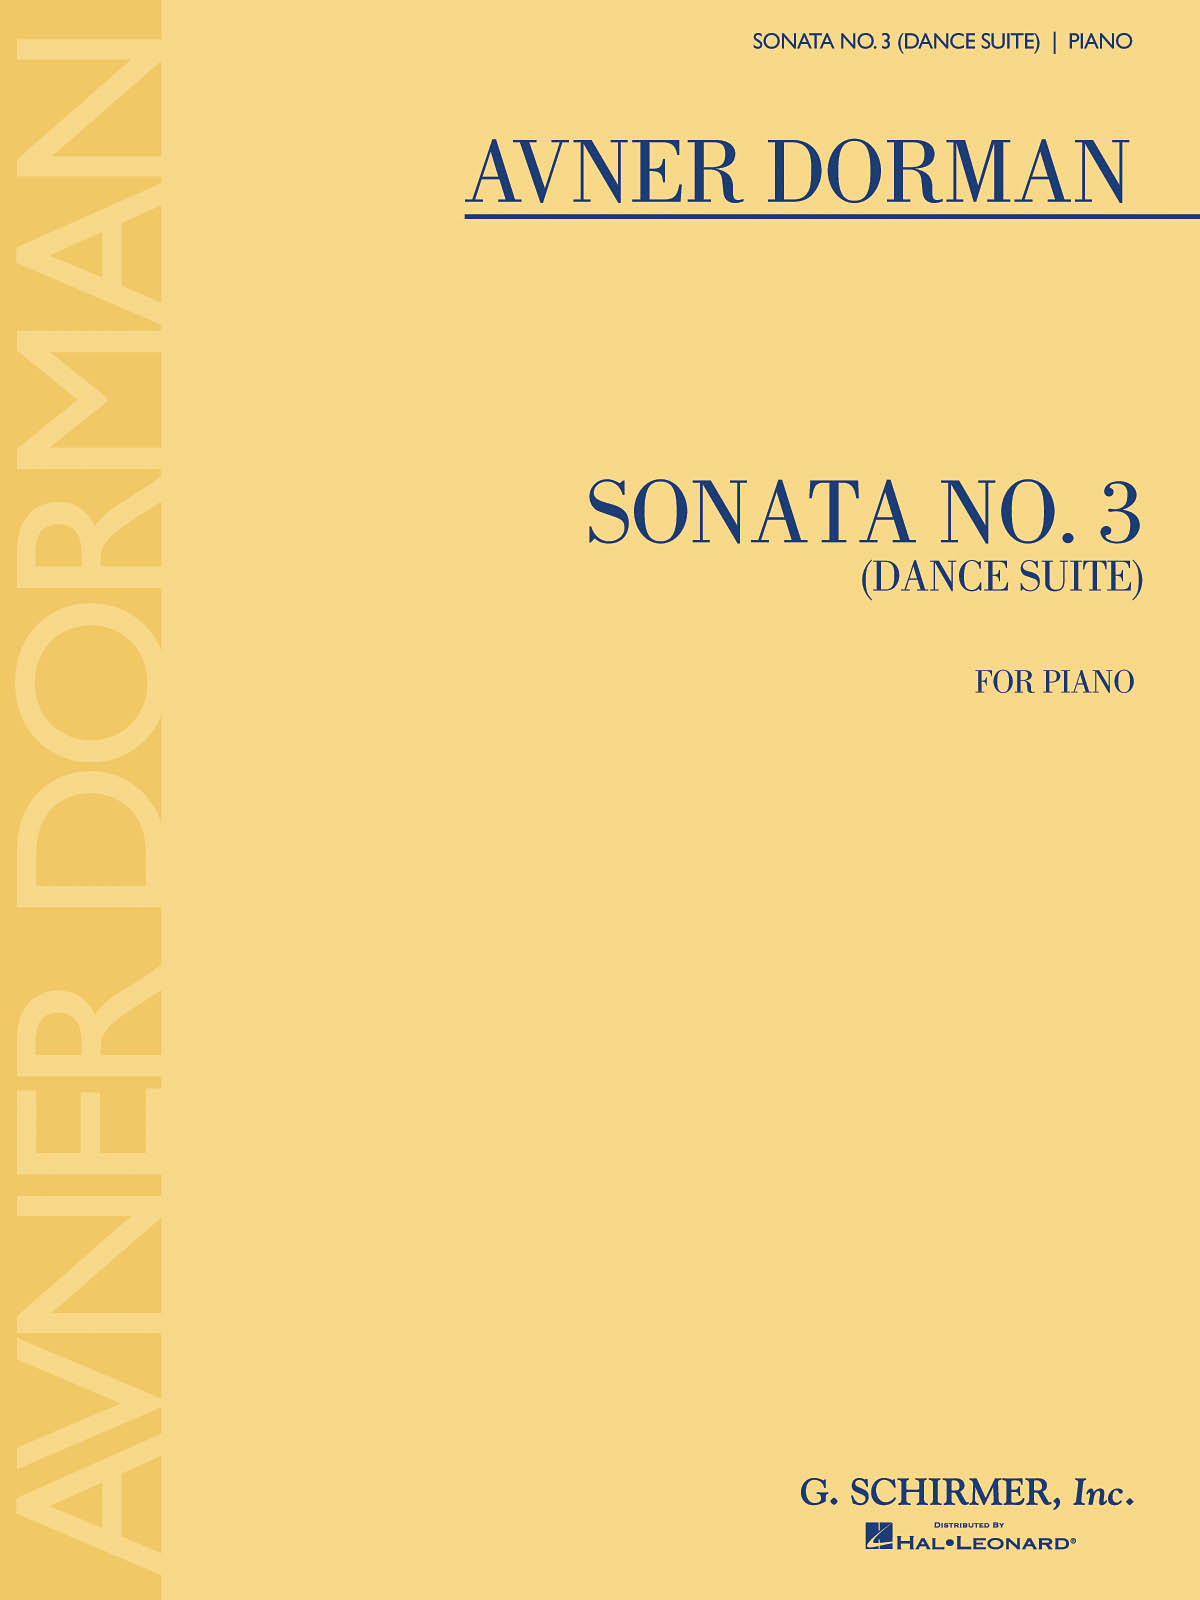 Avner Dorman: Sonata No. 3